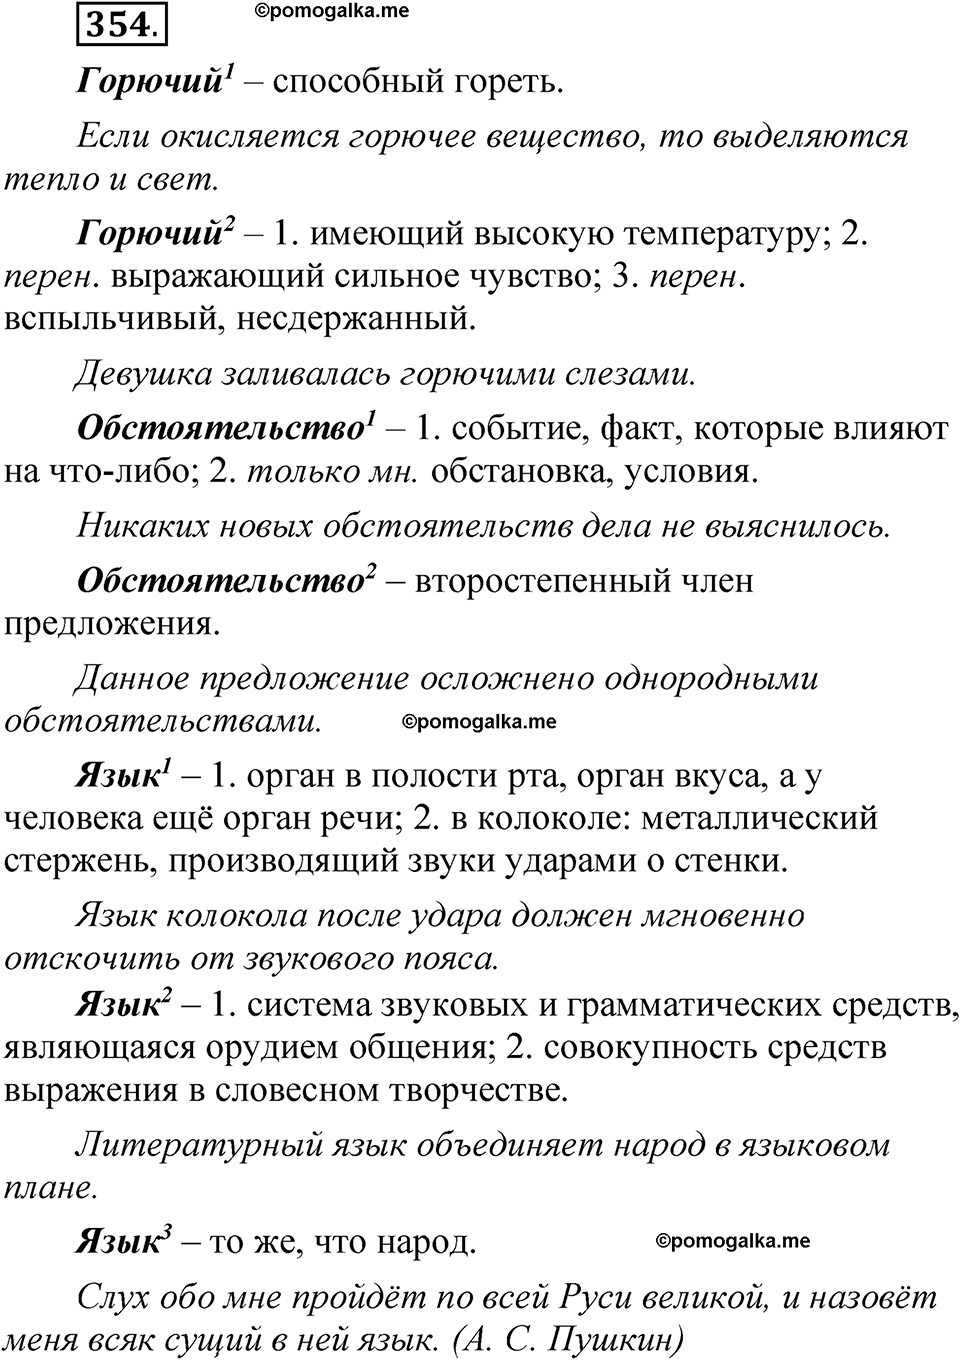 страница 251 упражнение 354 русский язык 5 класс Быстрова, Кибирева 1 часть 2021 год